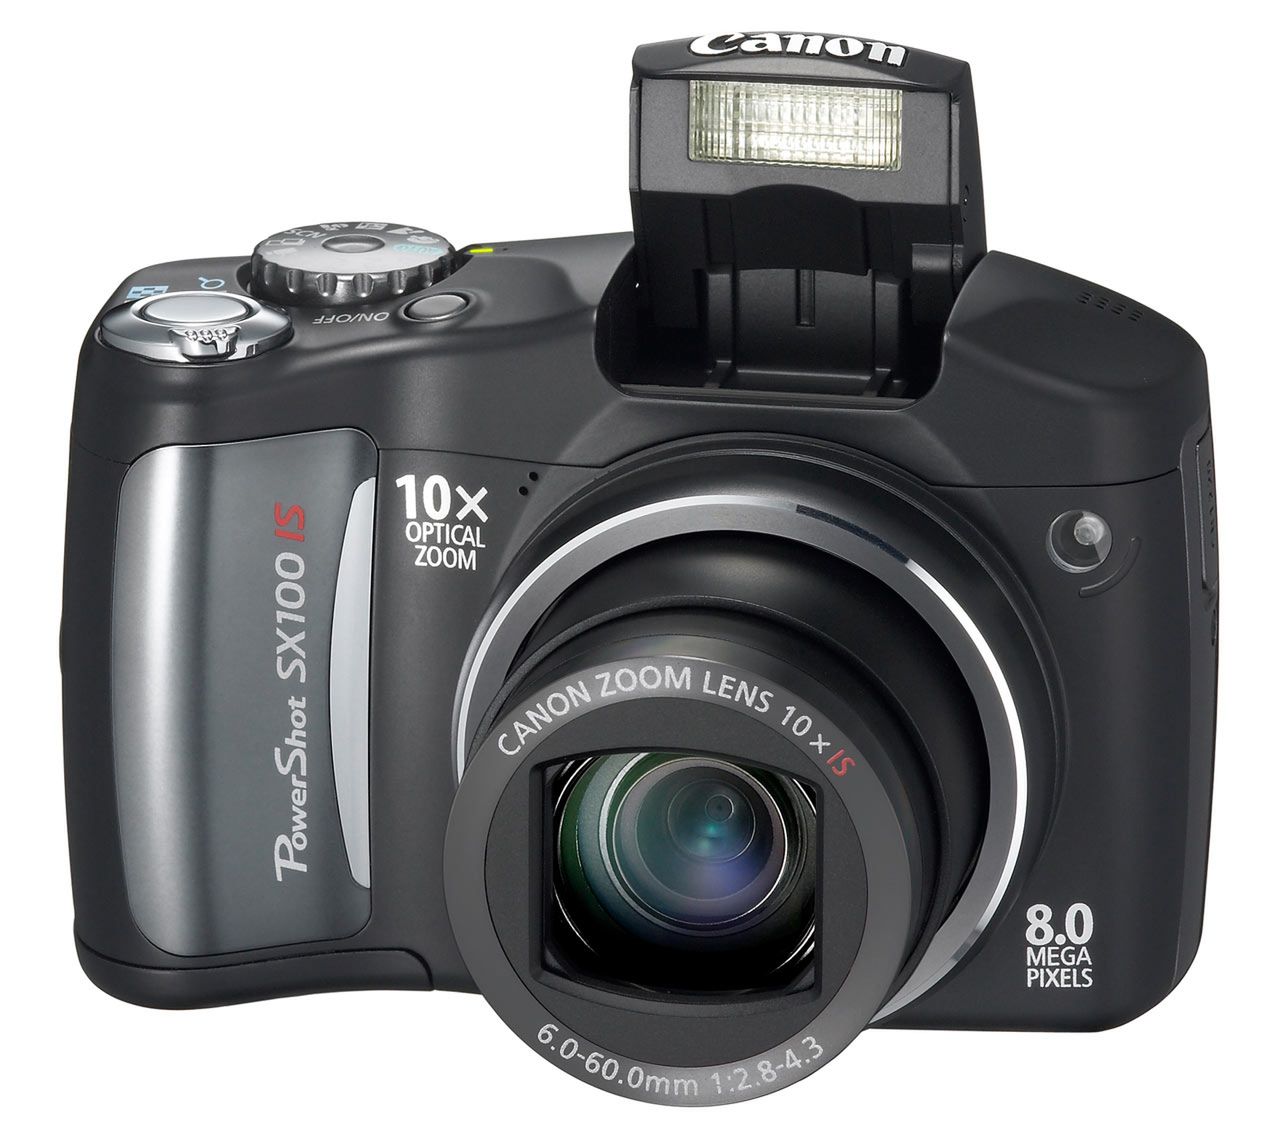 Canon PowerShot SX100 IS to aparat przeznaczony do fotografii amatorskiej